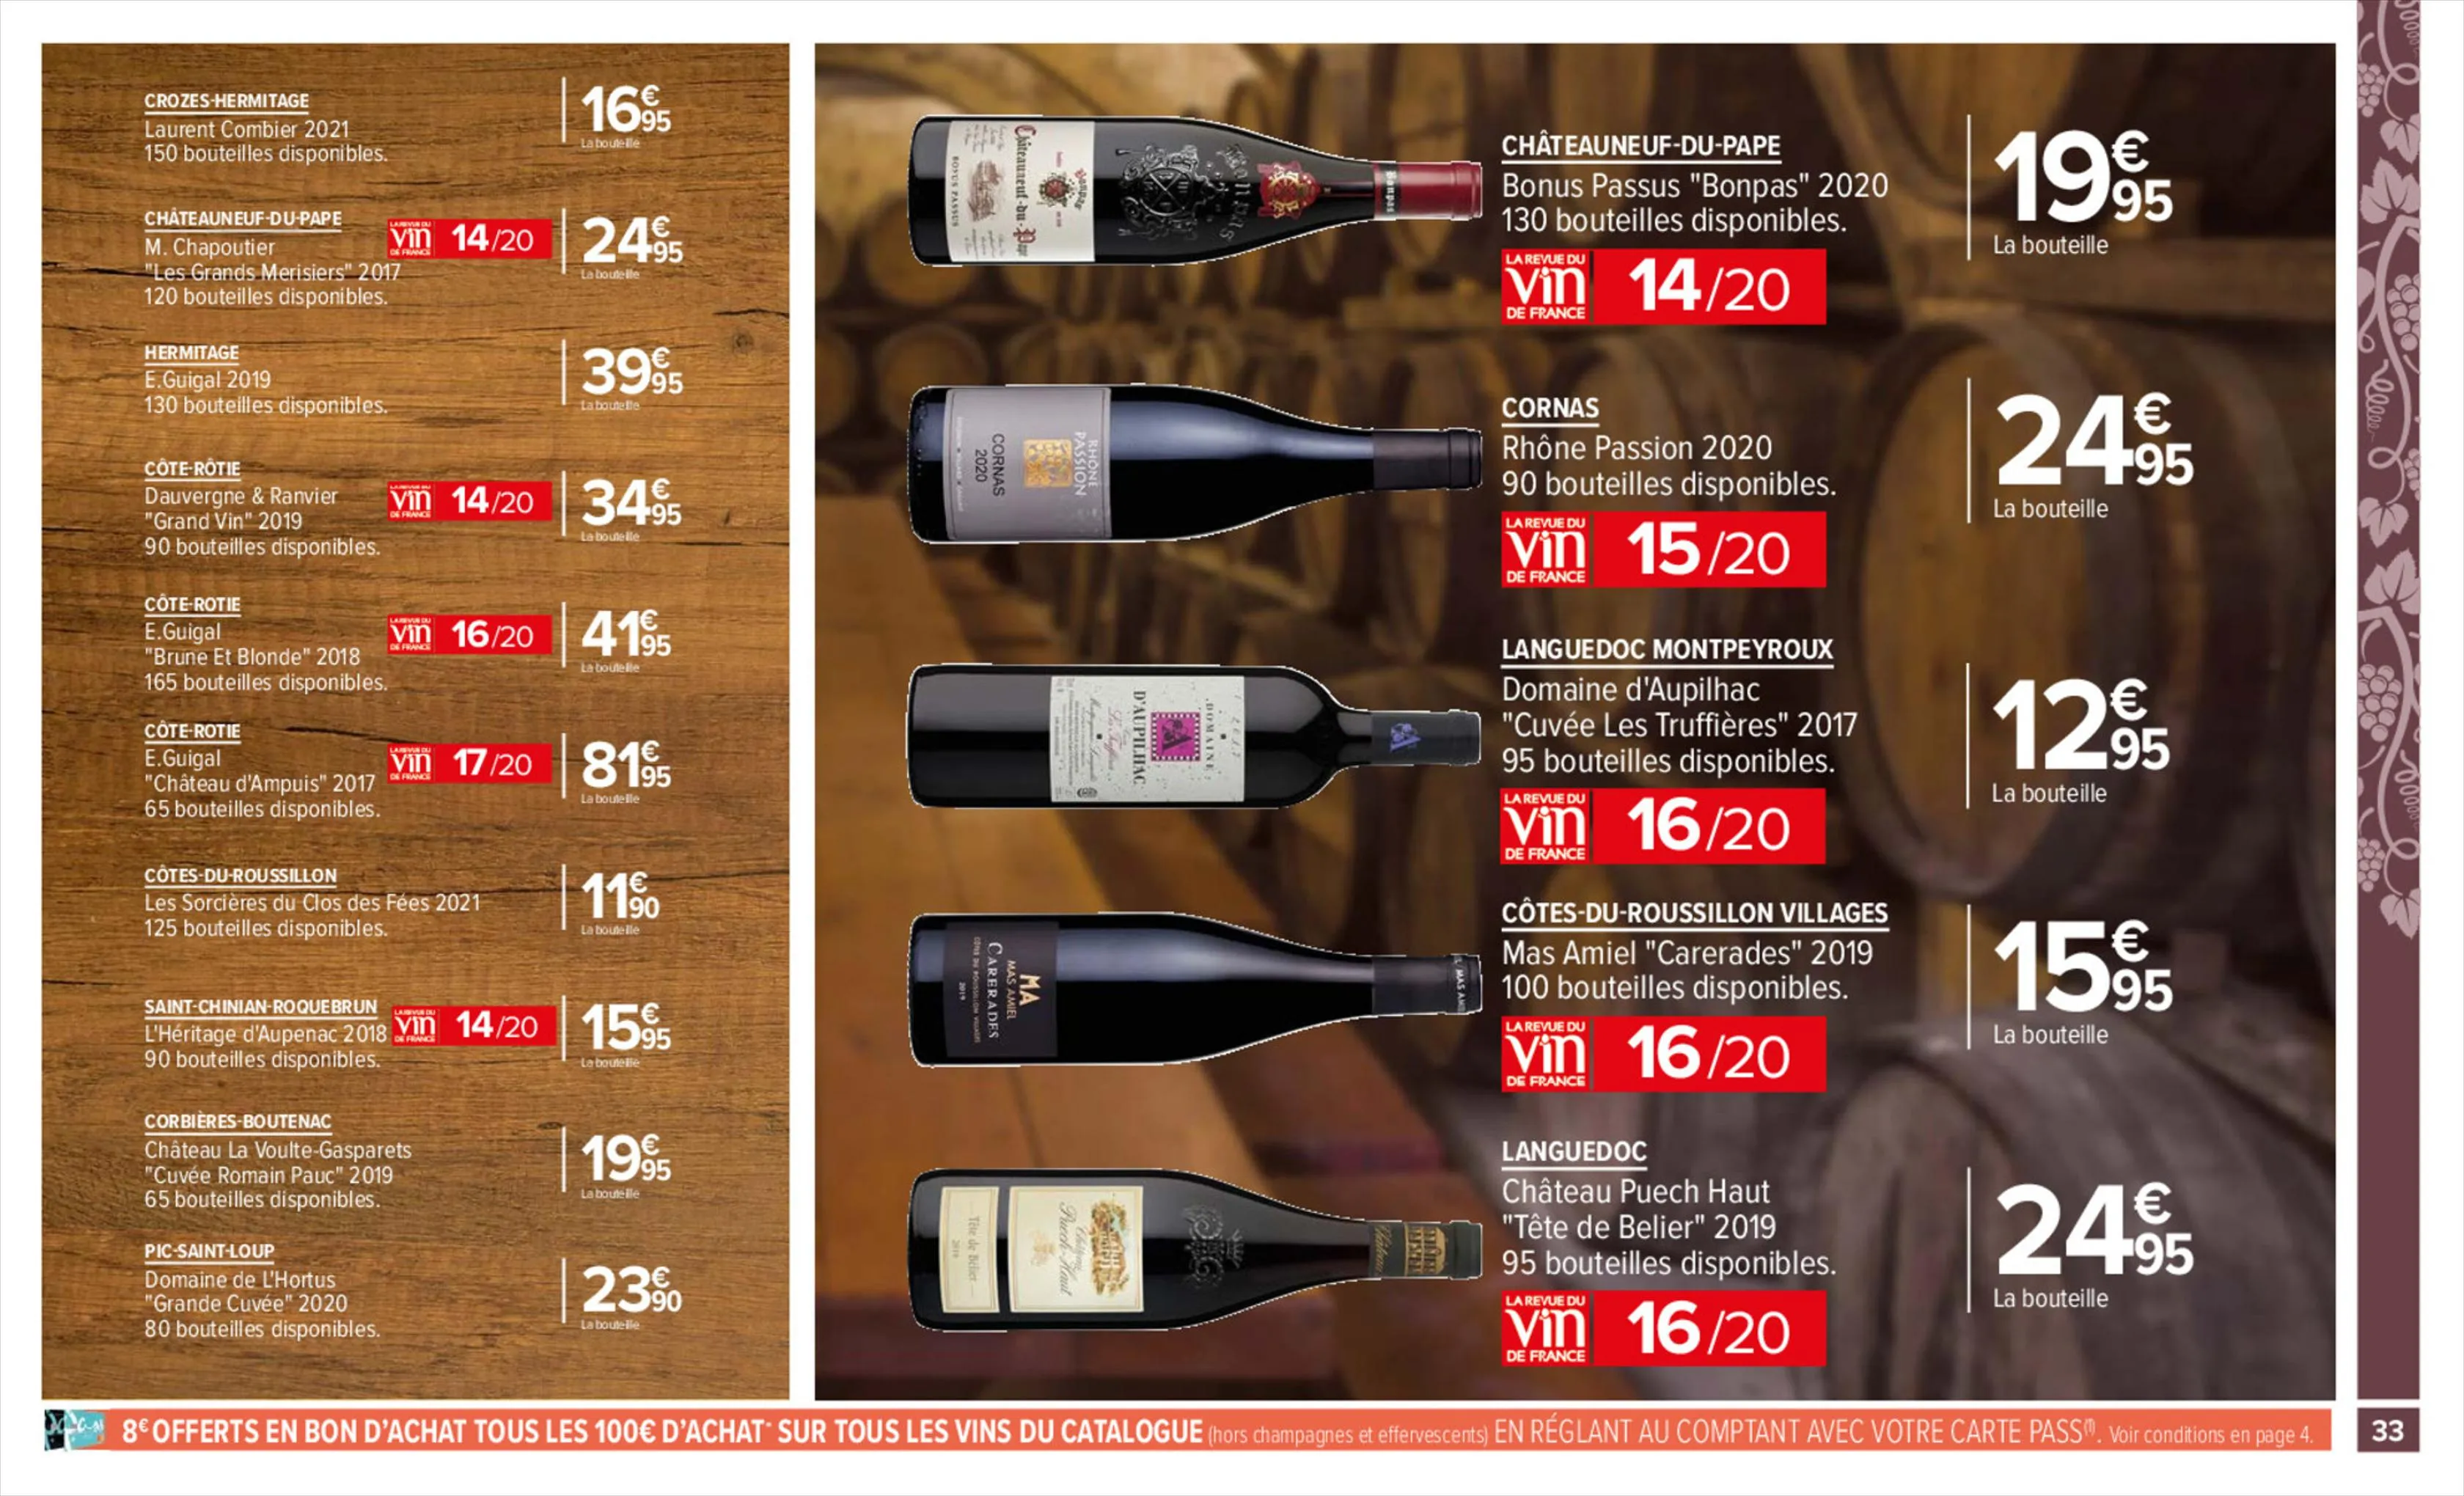 Catalogue Foire aux vins, page 00033